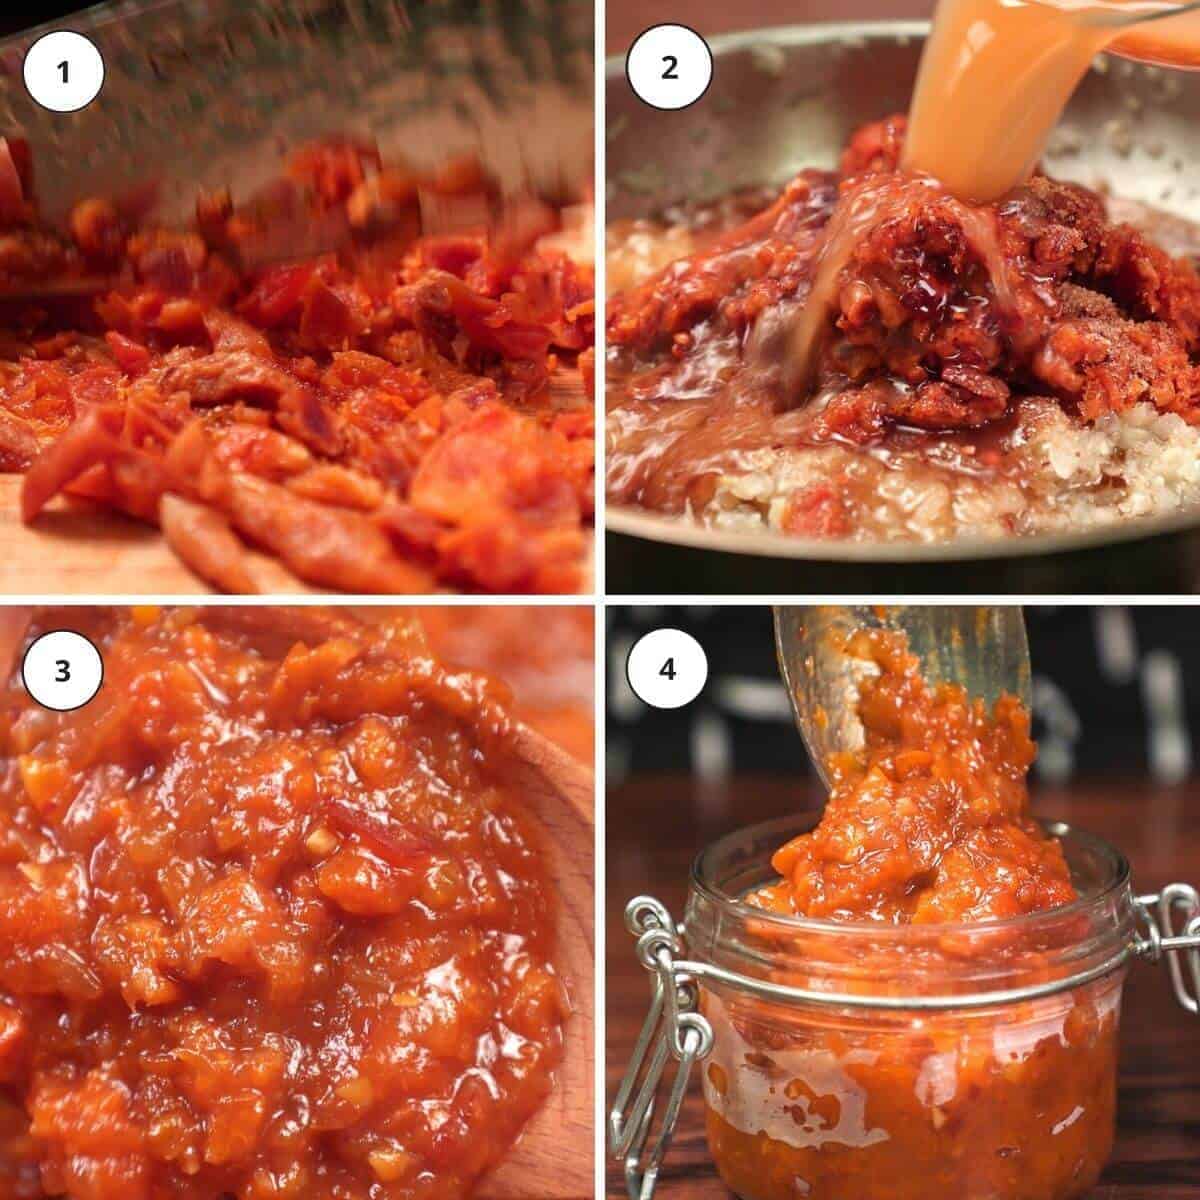 https://www.pantsdownapronson.com/wp-content/uploads/steps-for-making-apricot-chilli-chutney-1.jpg